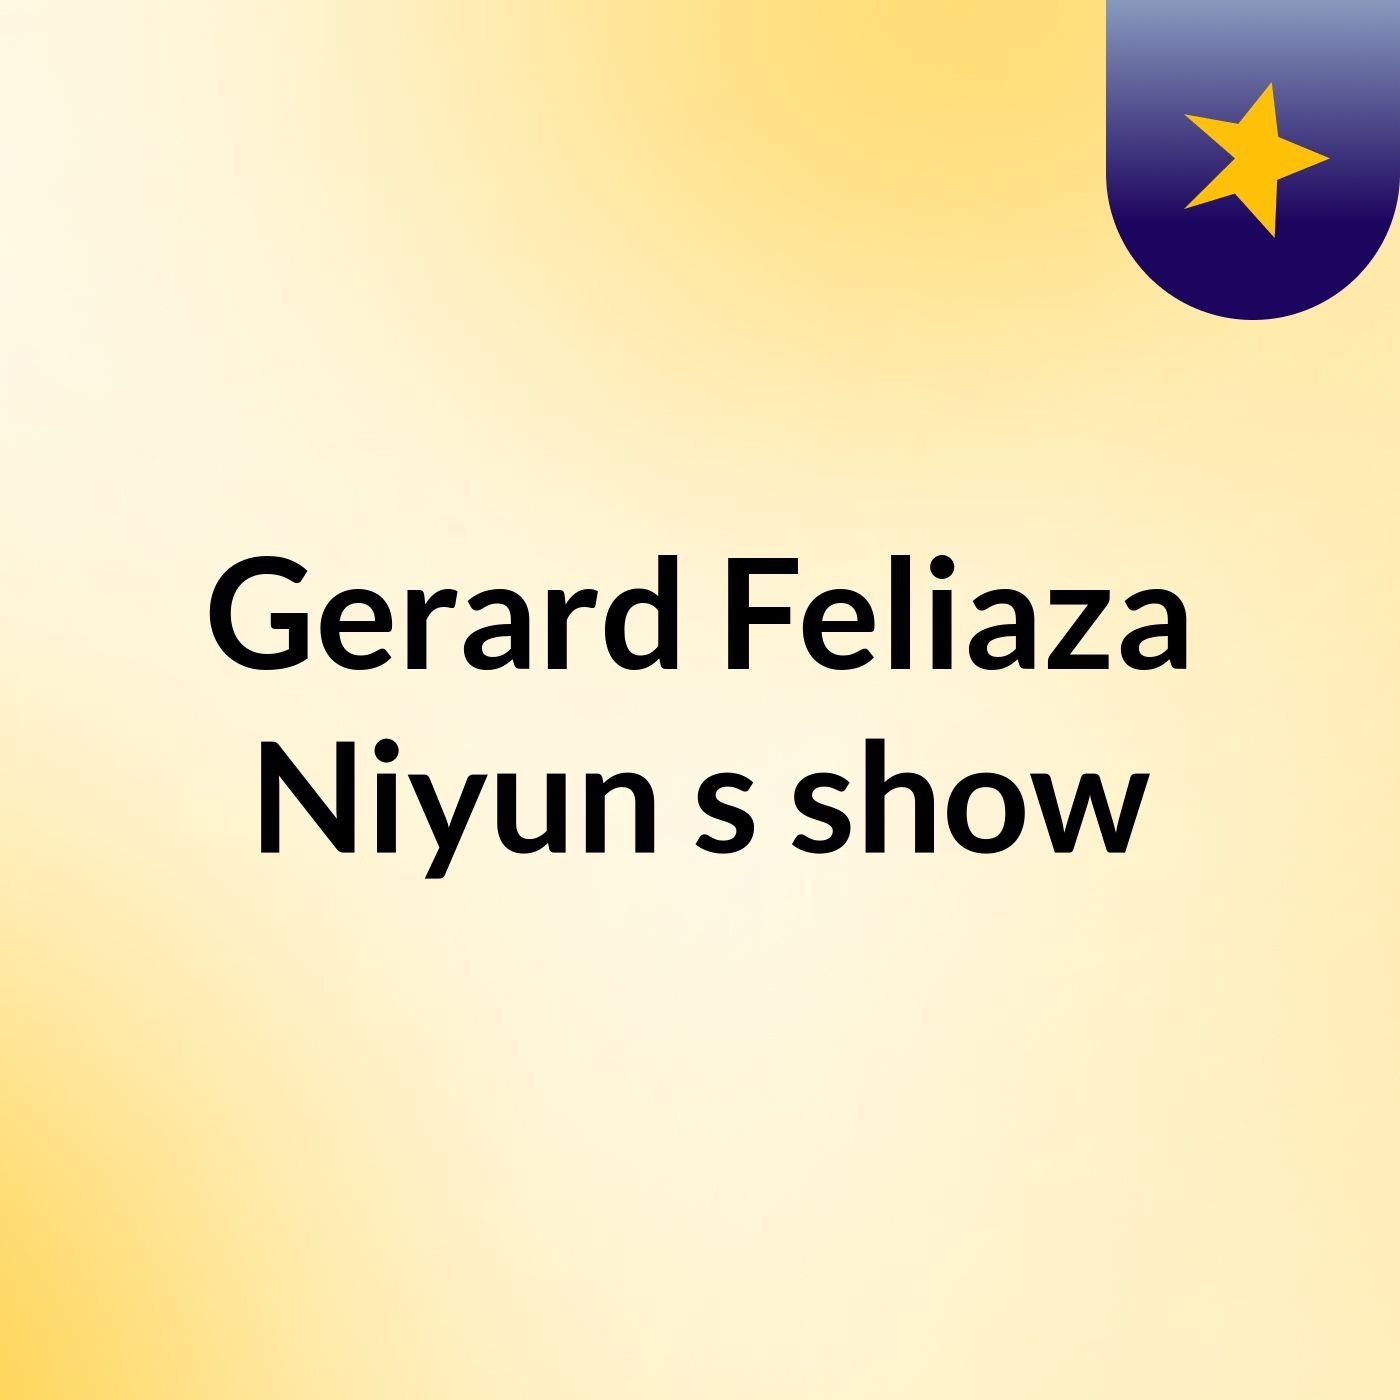 Gerard Feliaza Niyun's show